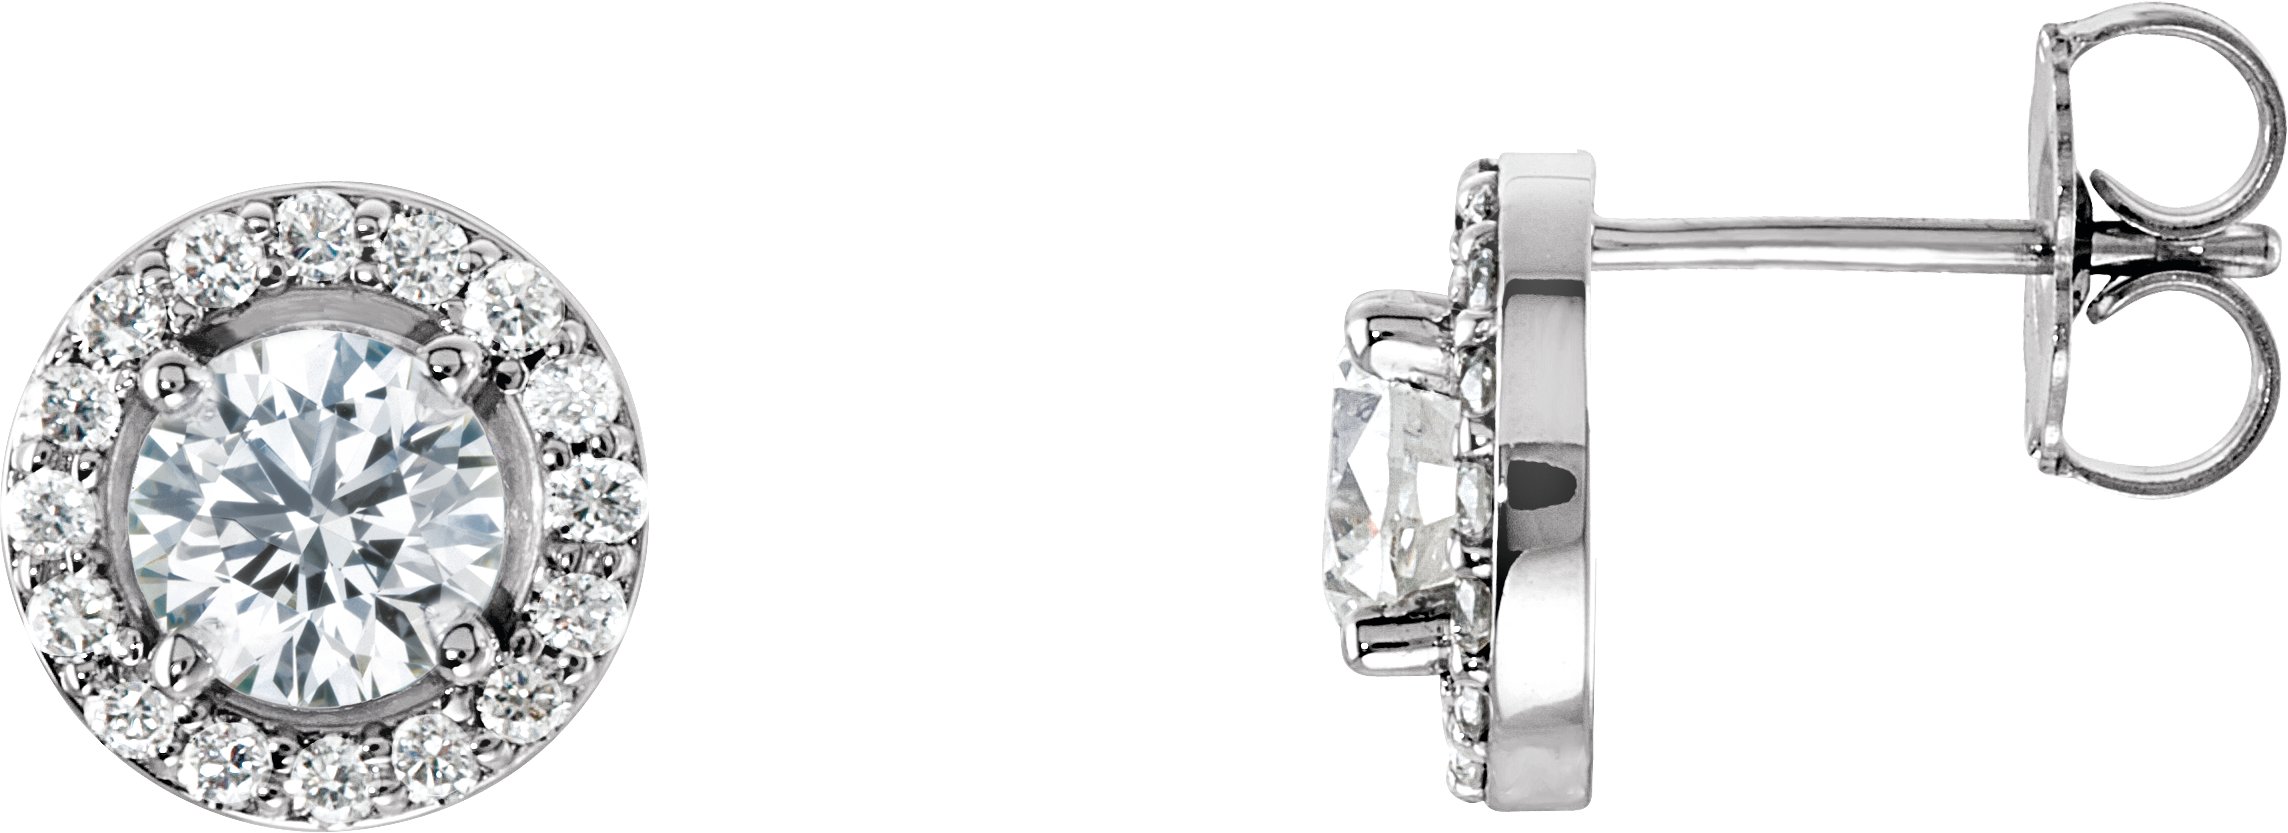 14K White 5 mm Round Forever One™ Moissanite & 1/3 CTW Diamond Earrings 